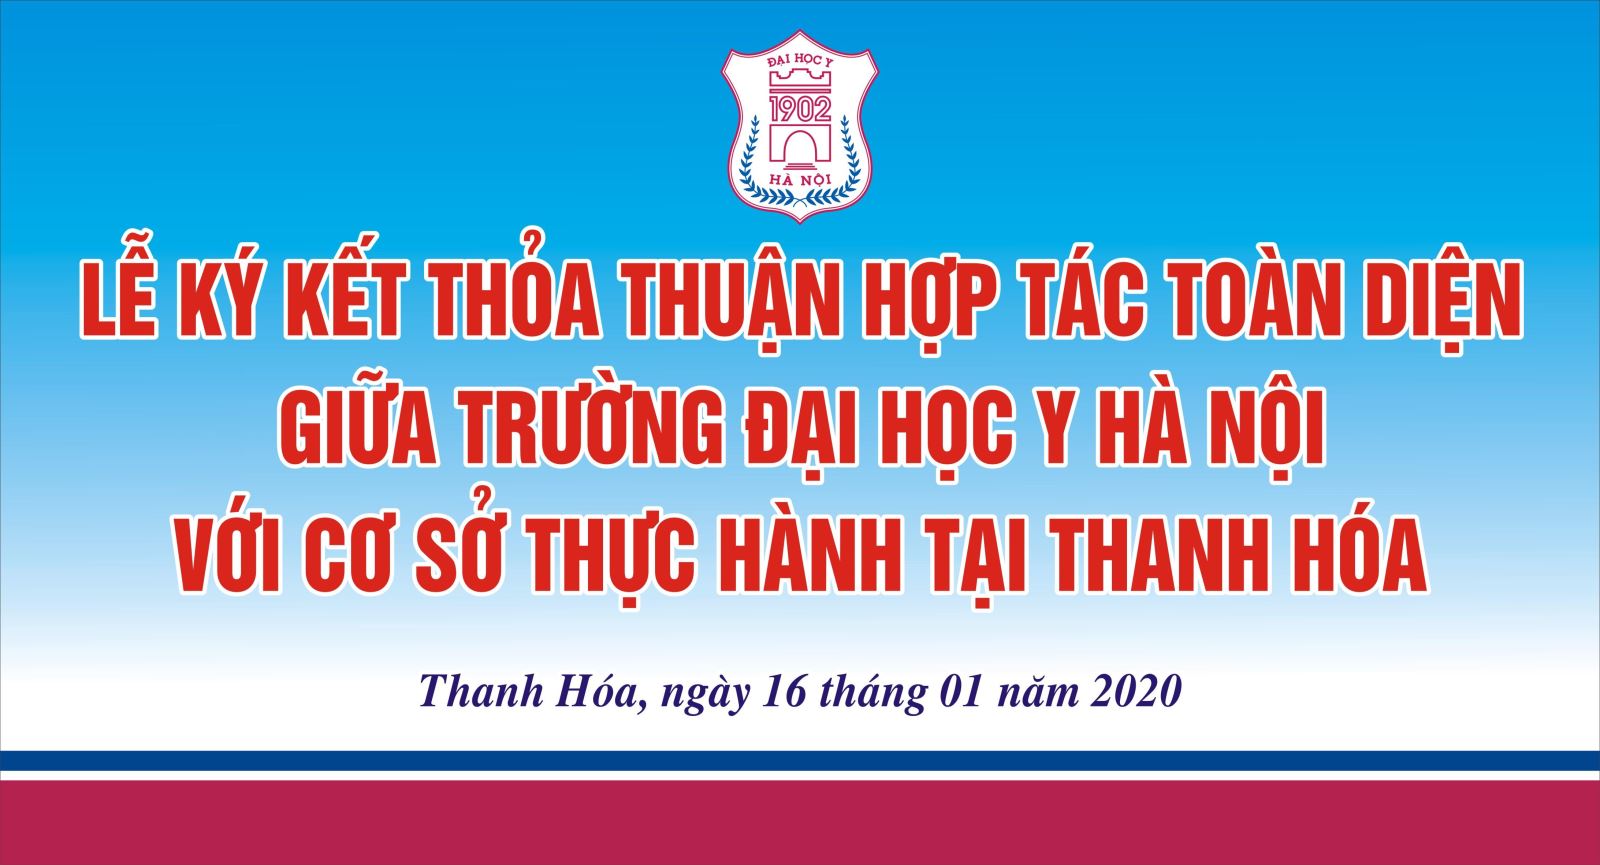 Ký kết thỏa thuận hợp tác toàn diện giữa Trường Đại học Y Hà Nội với Cơ sở thực hành tại Thanh Hóa